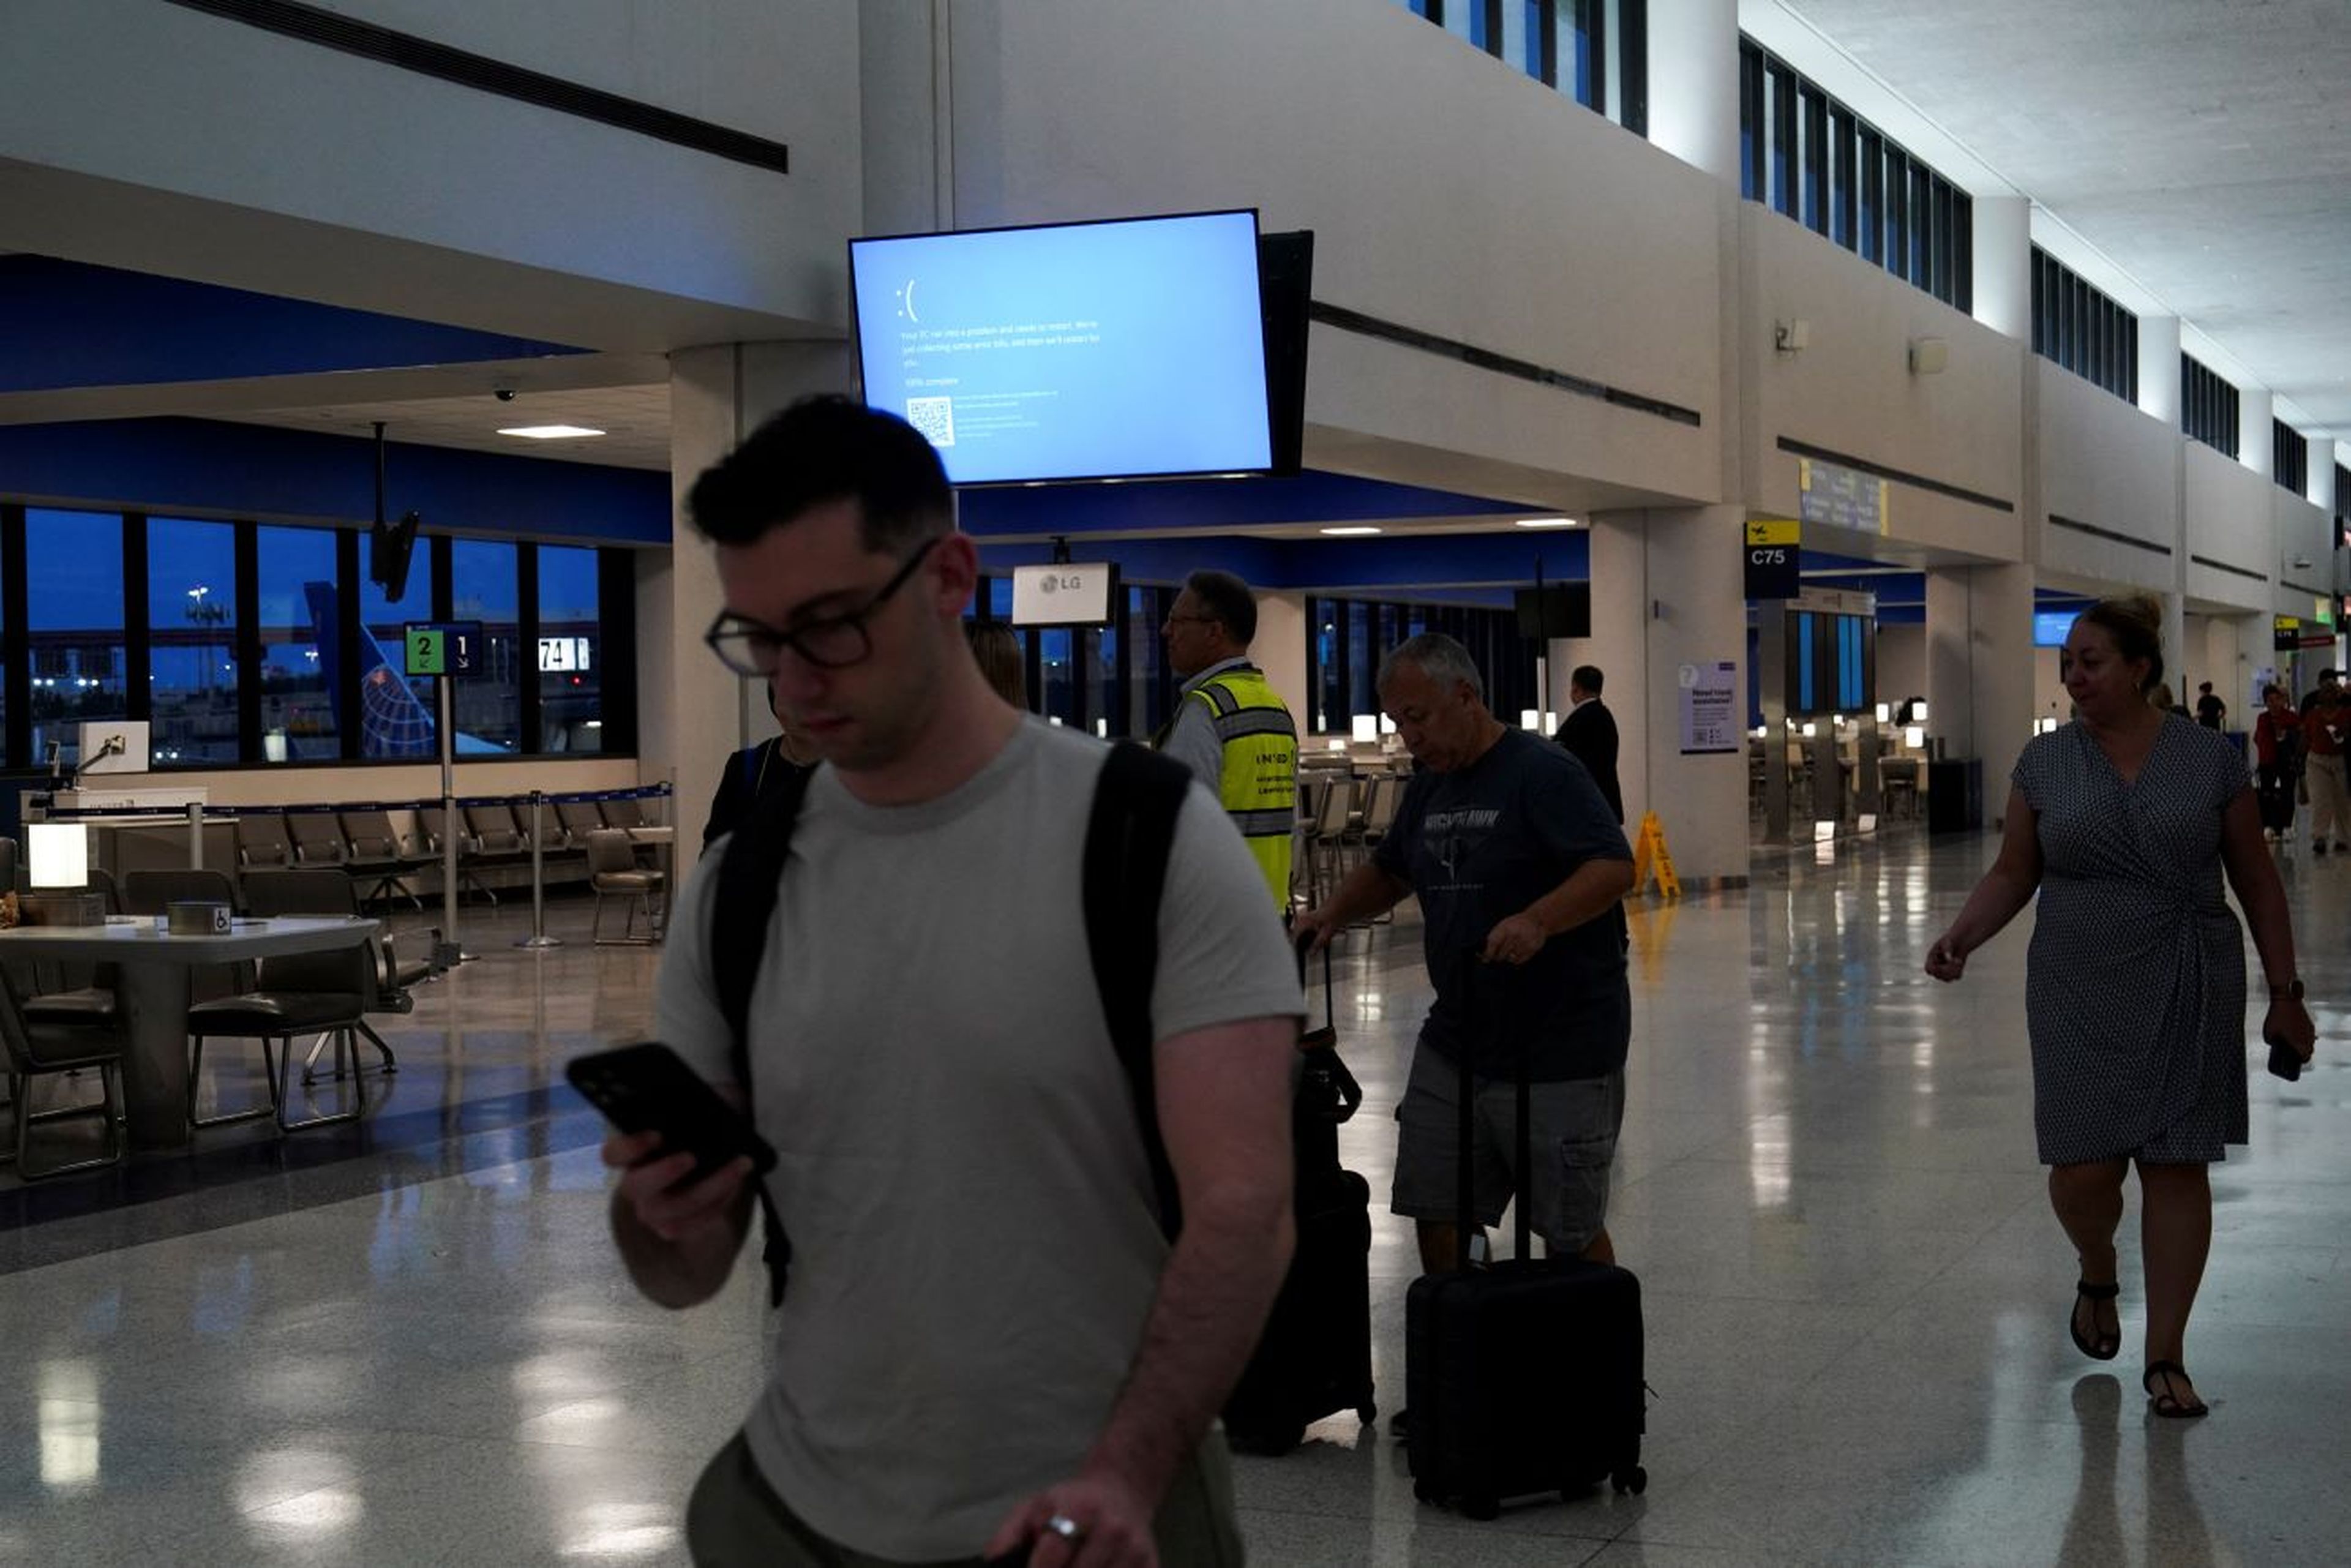 Apagón informático, aeropuerto EEUU, pantalla azul de la muerte